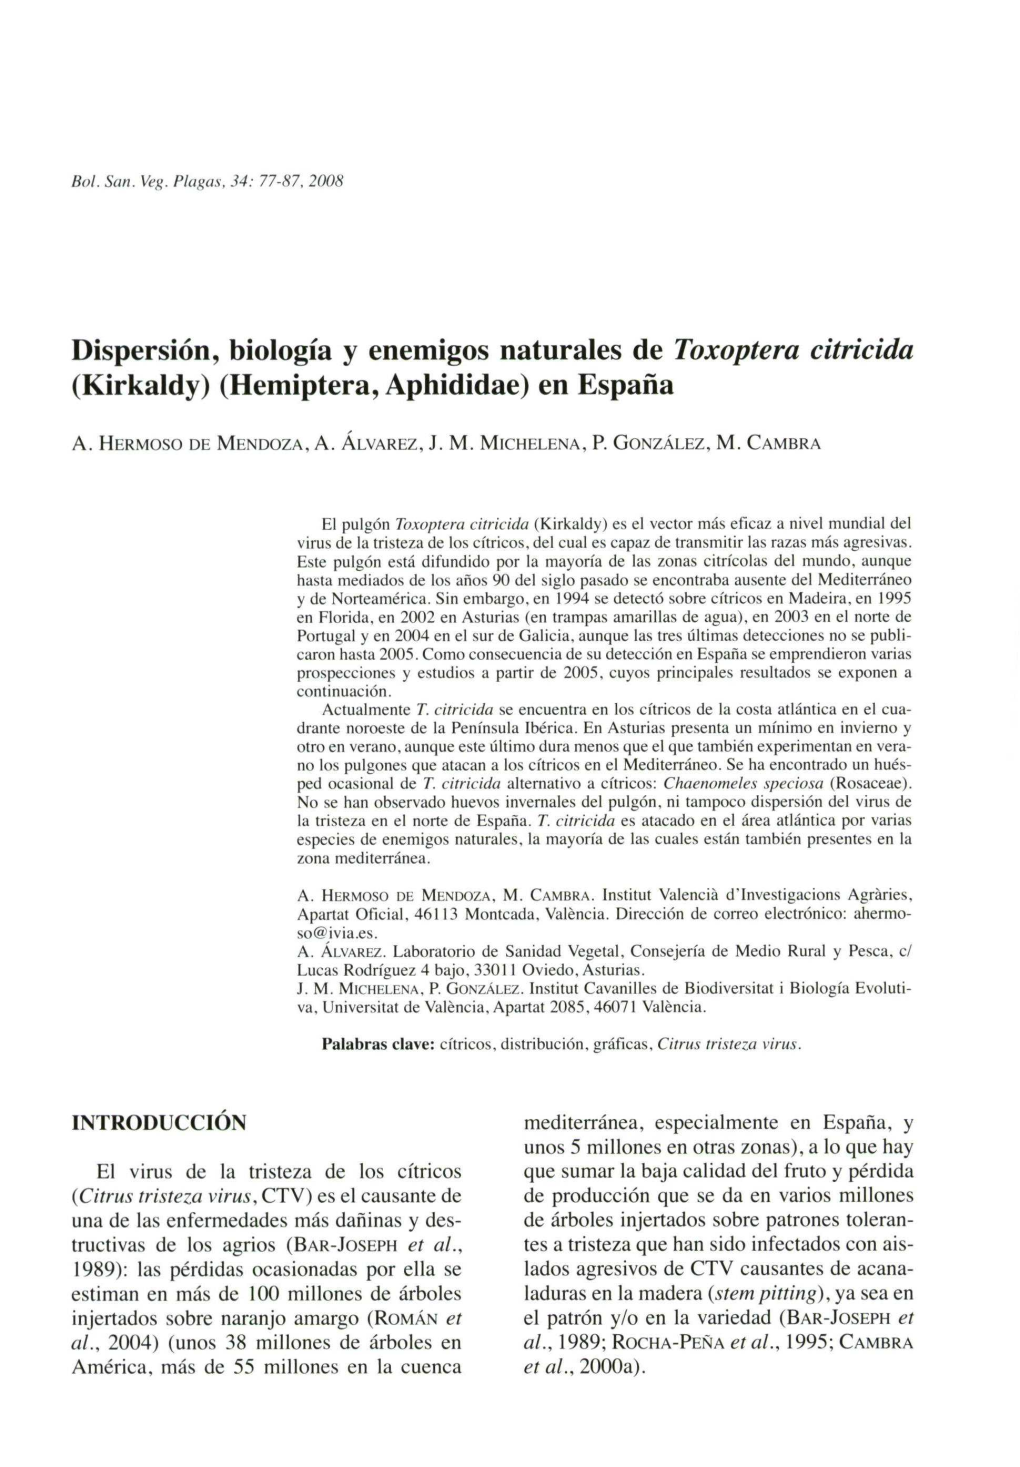 Dispersión, Biología Y Enemigos Naturales De Toxoptera Citricida (Kirkaldy) (Hemiptera, Aphididae) En España